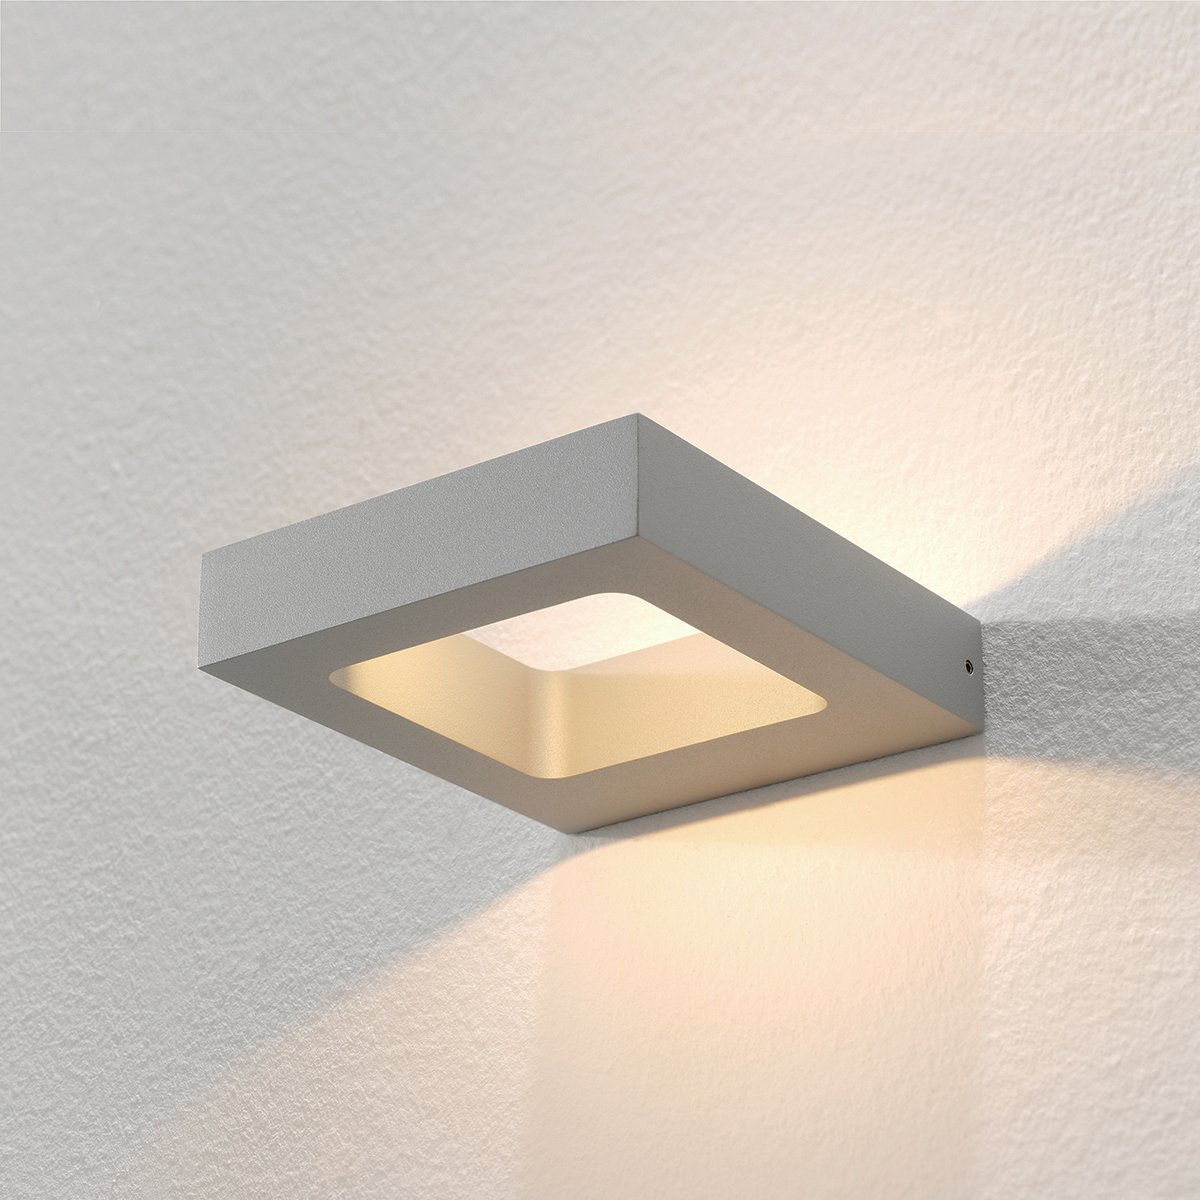 Muurlamp design up down grijs Broni - 3 cm